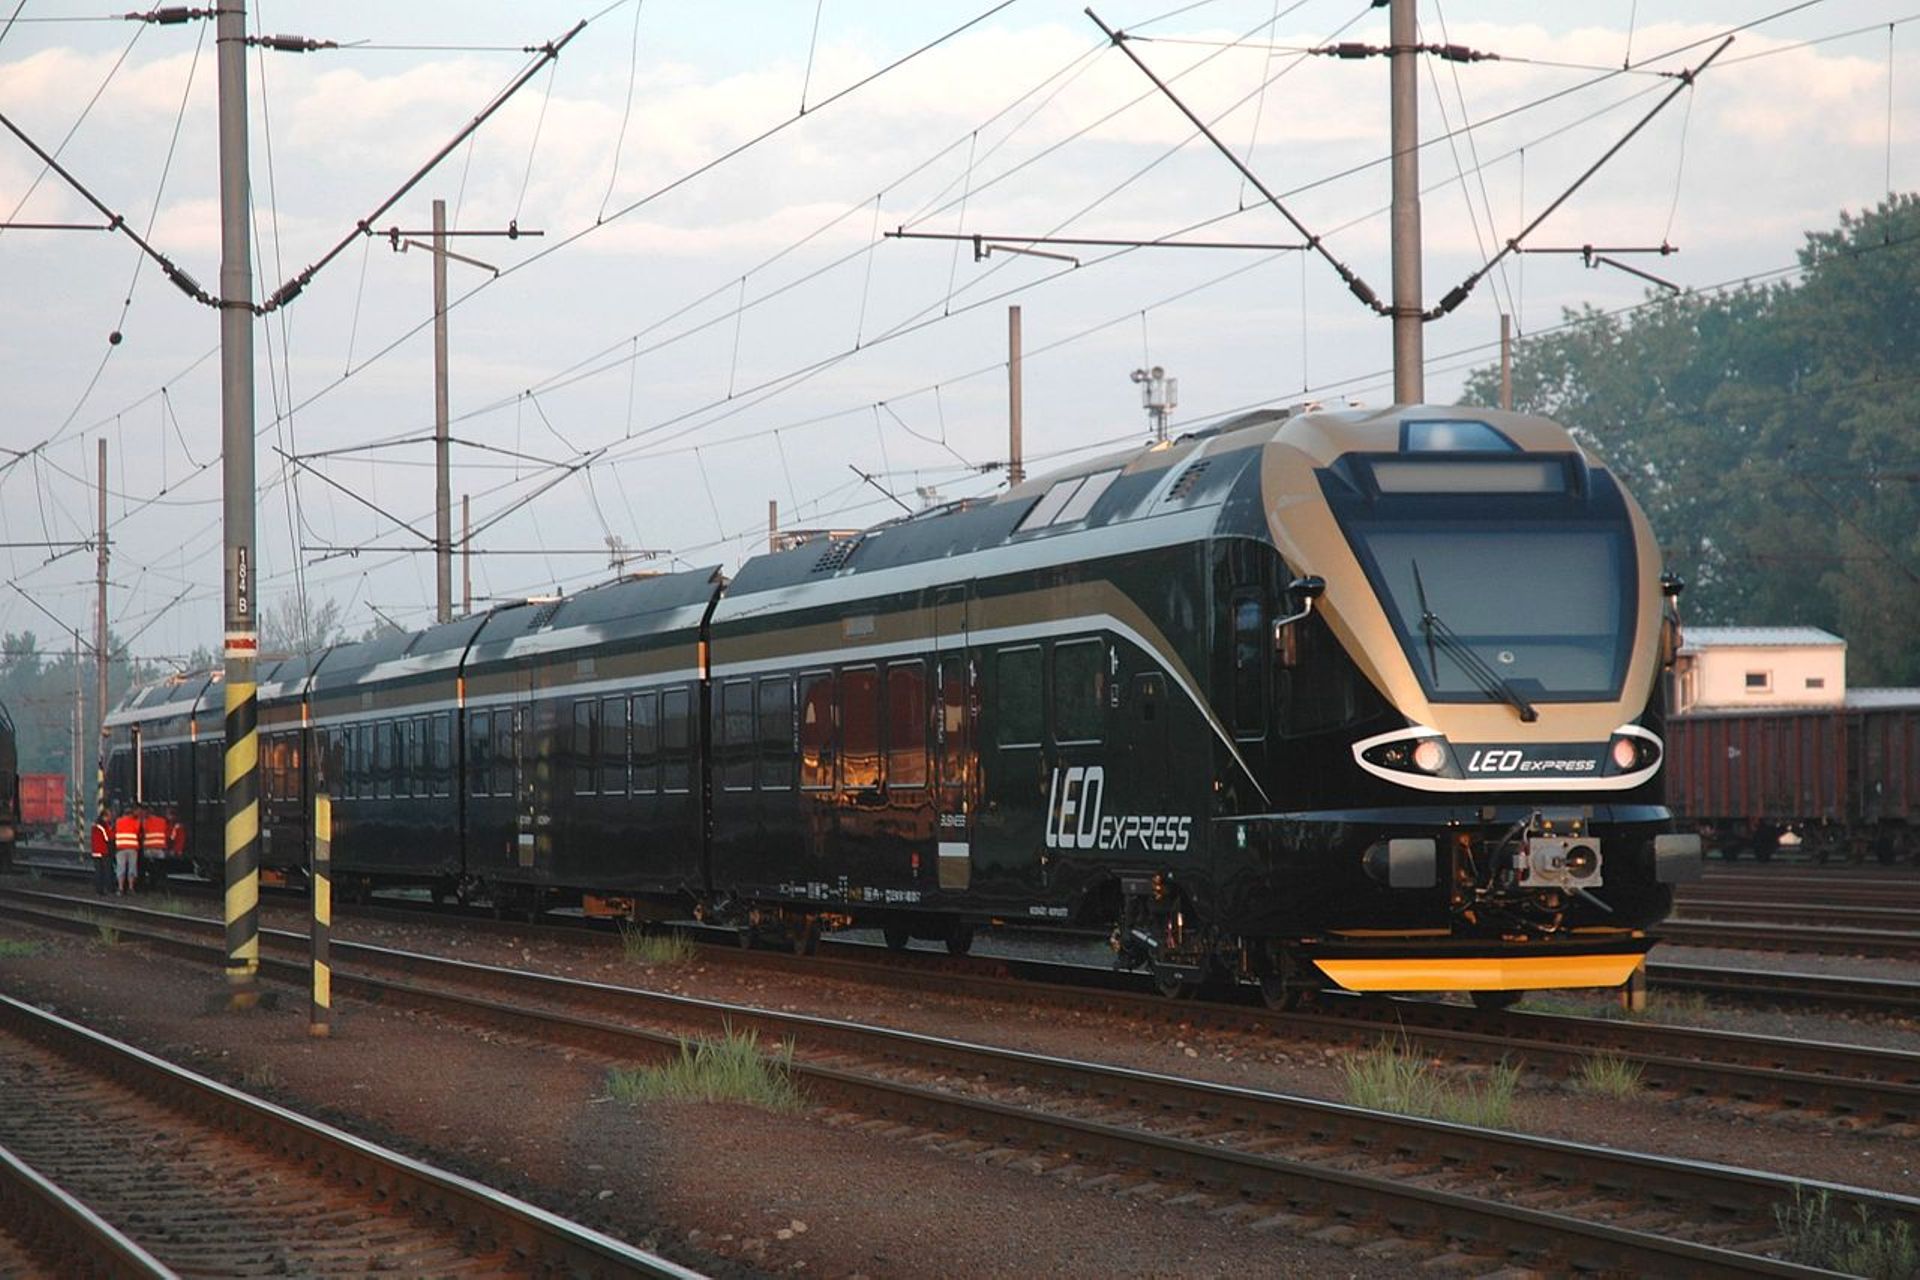 Od grudnia Wrocław zyska bezpośrednie połączenie kolejowe z Pragą